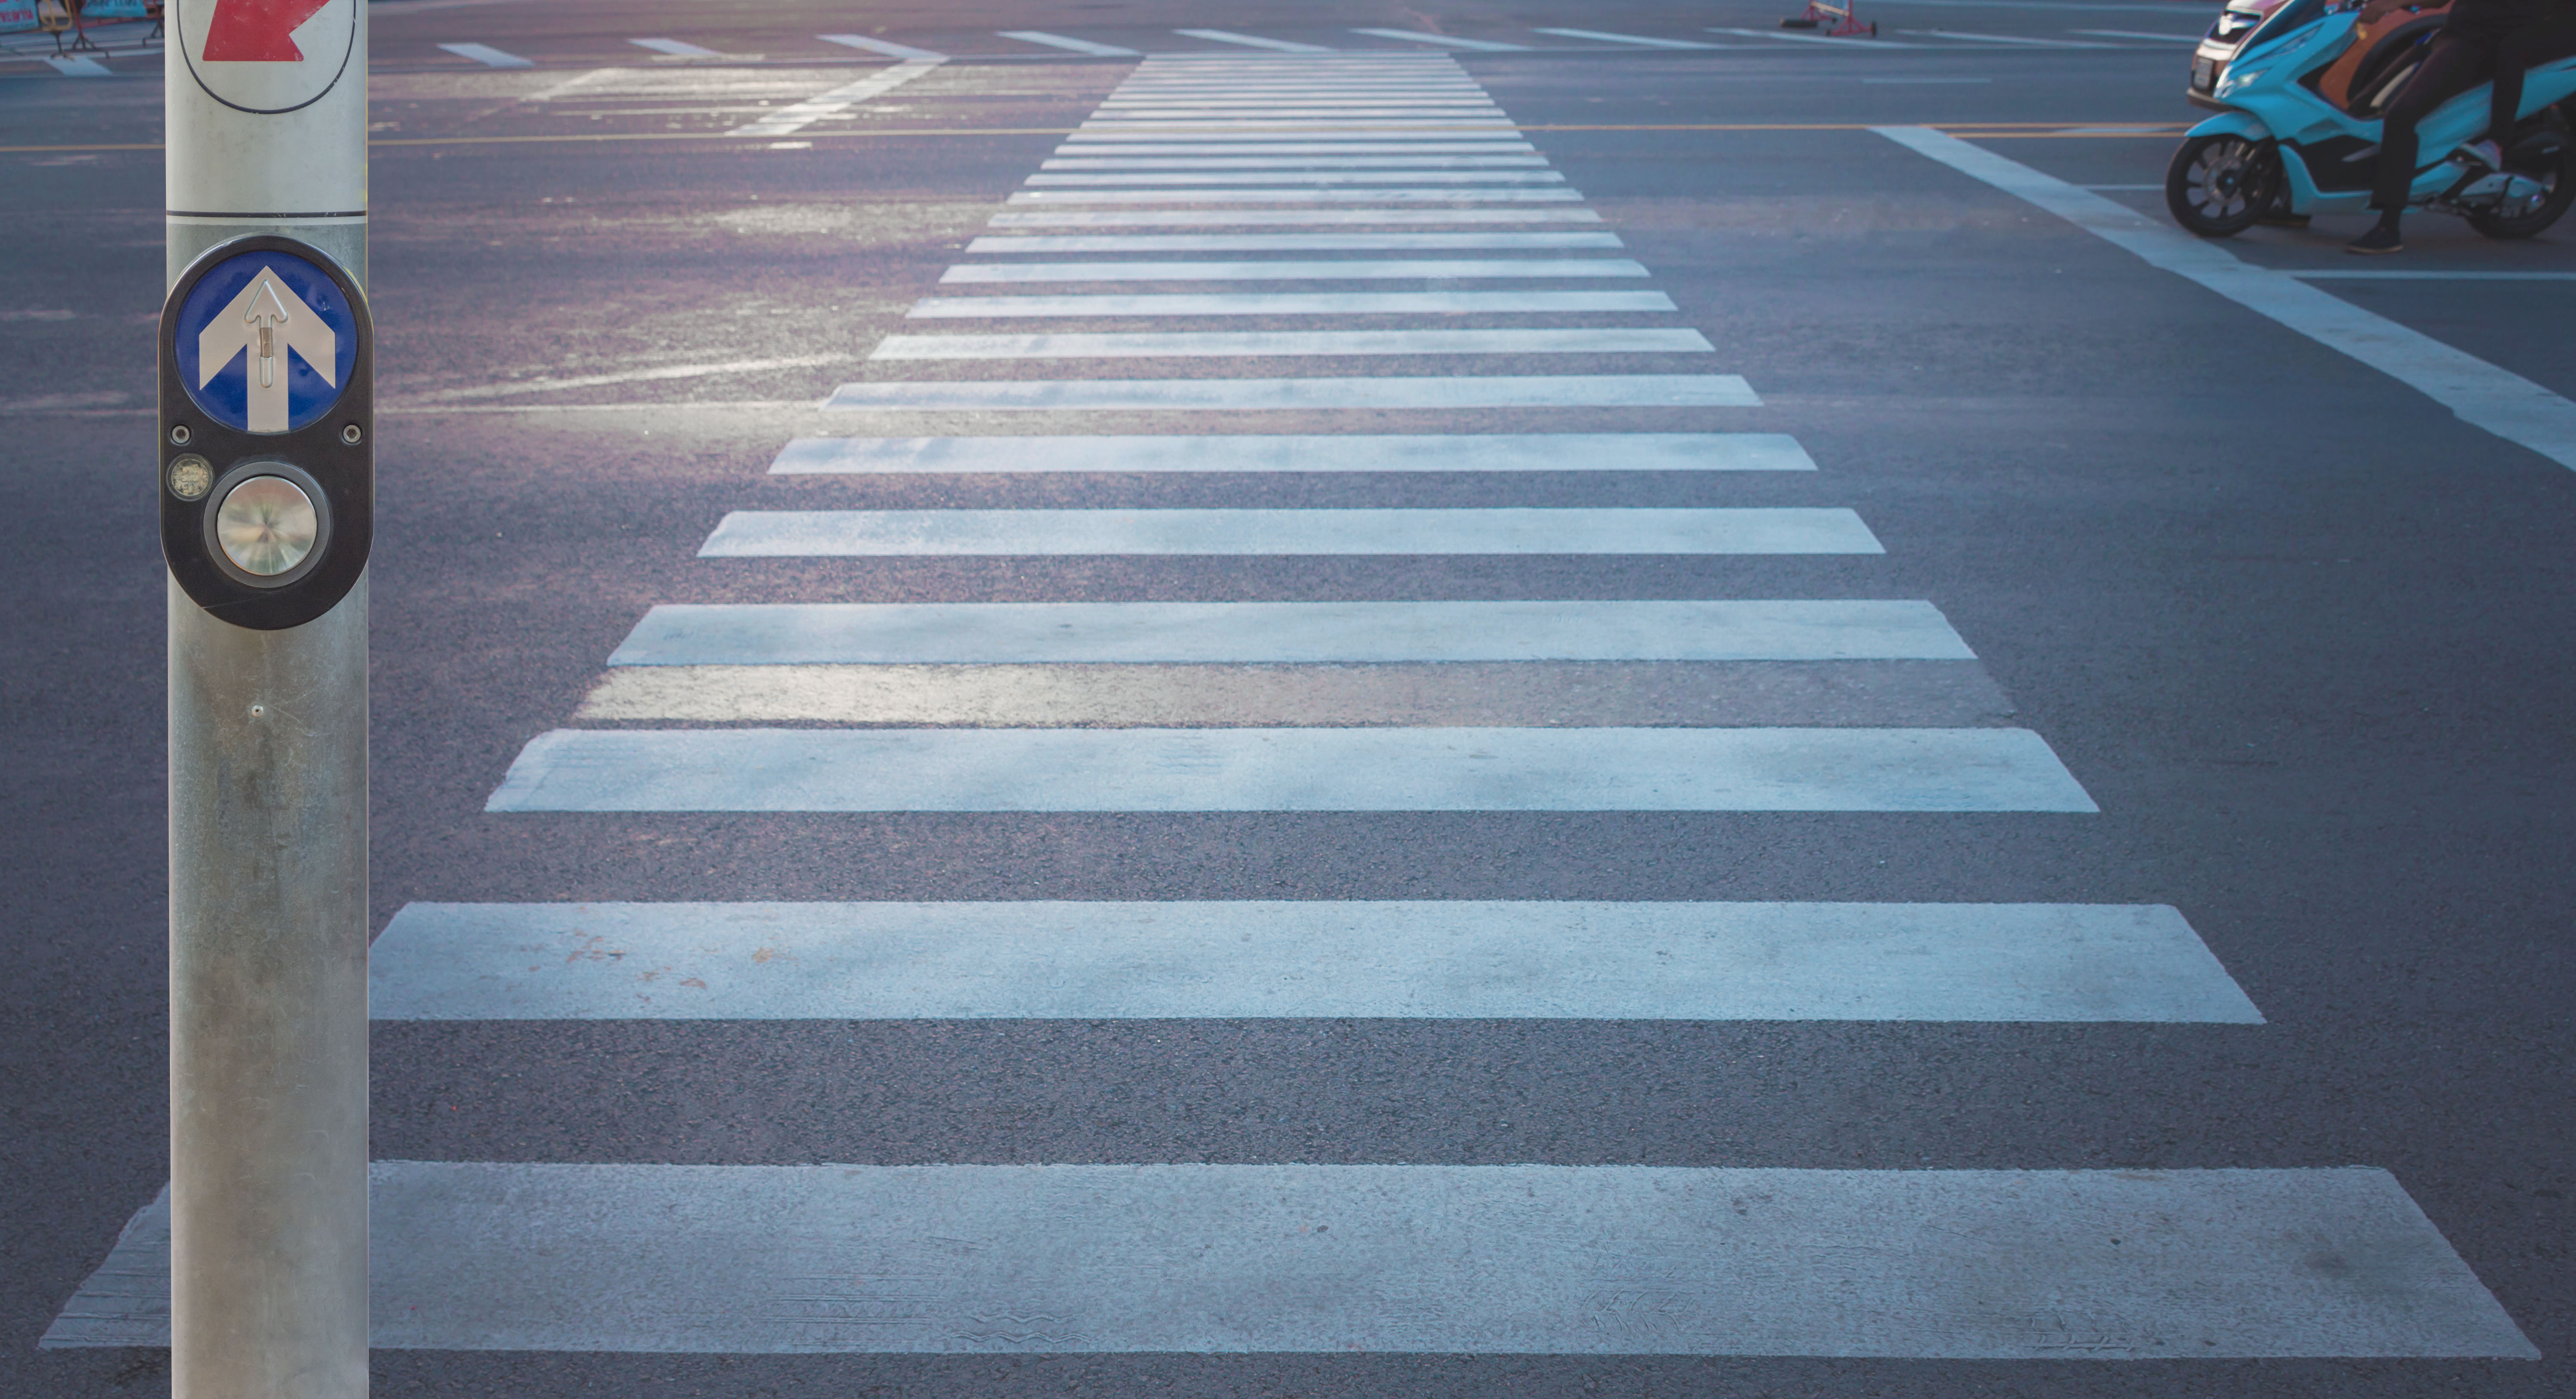 rules on pedestrian crossings in nsw